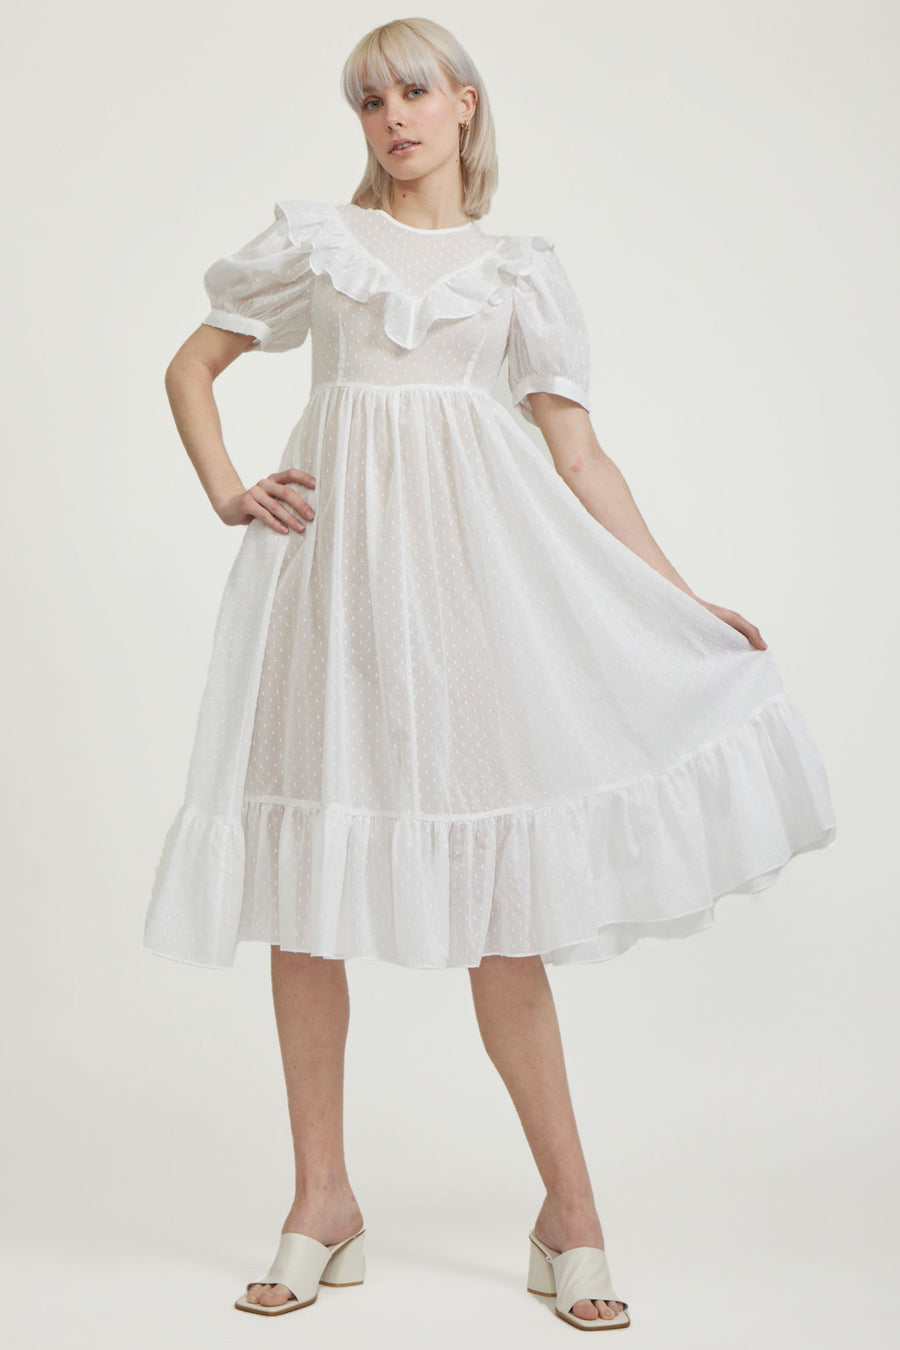 BATSHEVA - May Dress in White Swiss Dot